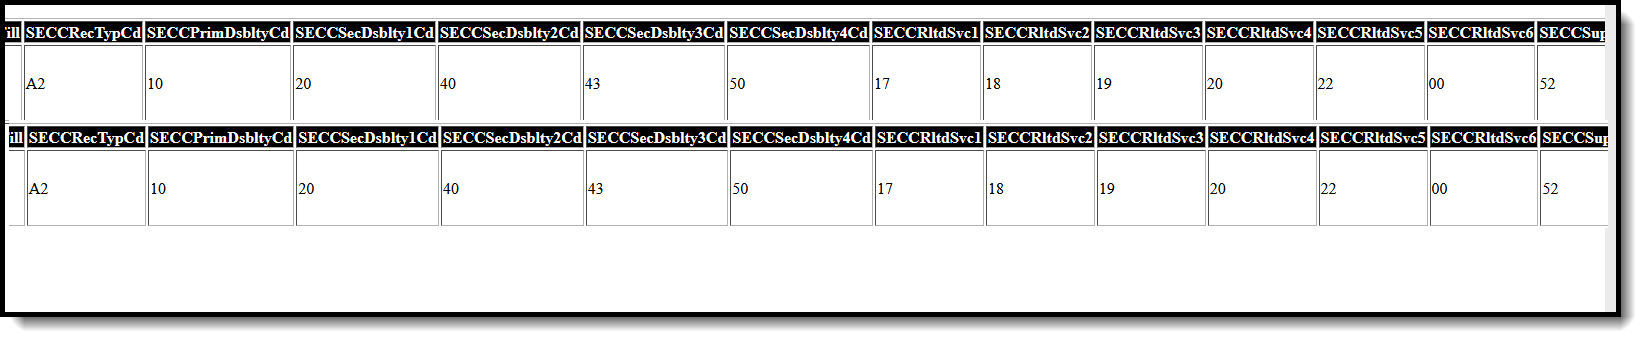 Screenshot of the SECC Report in HTML Format. 